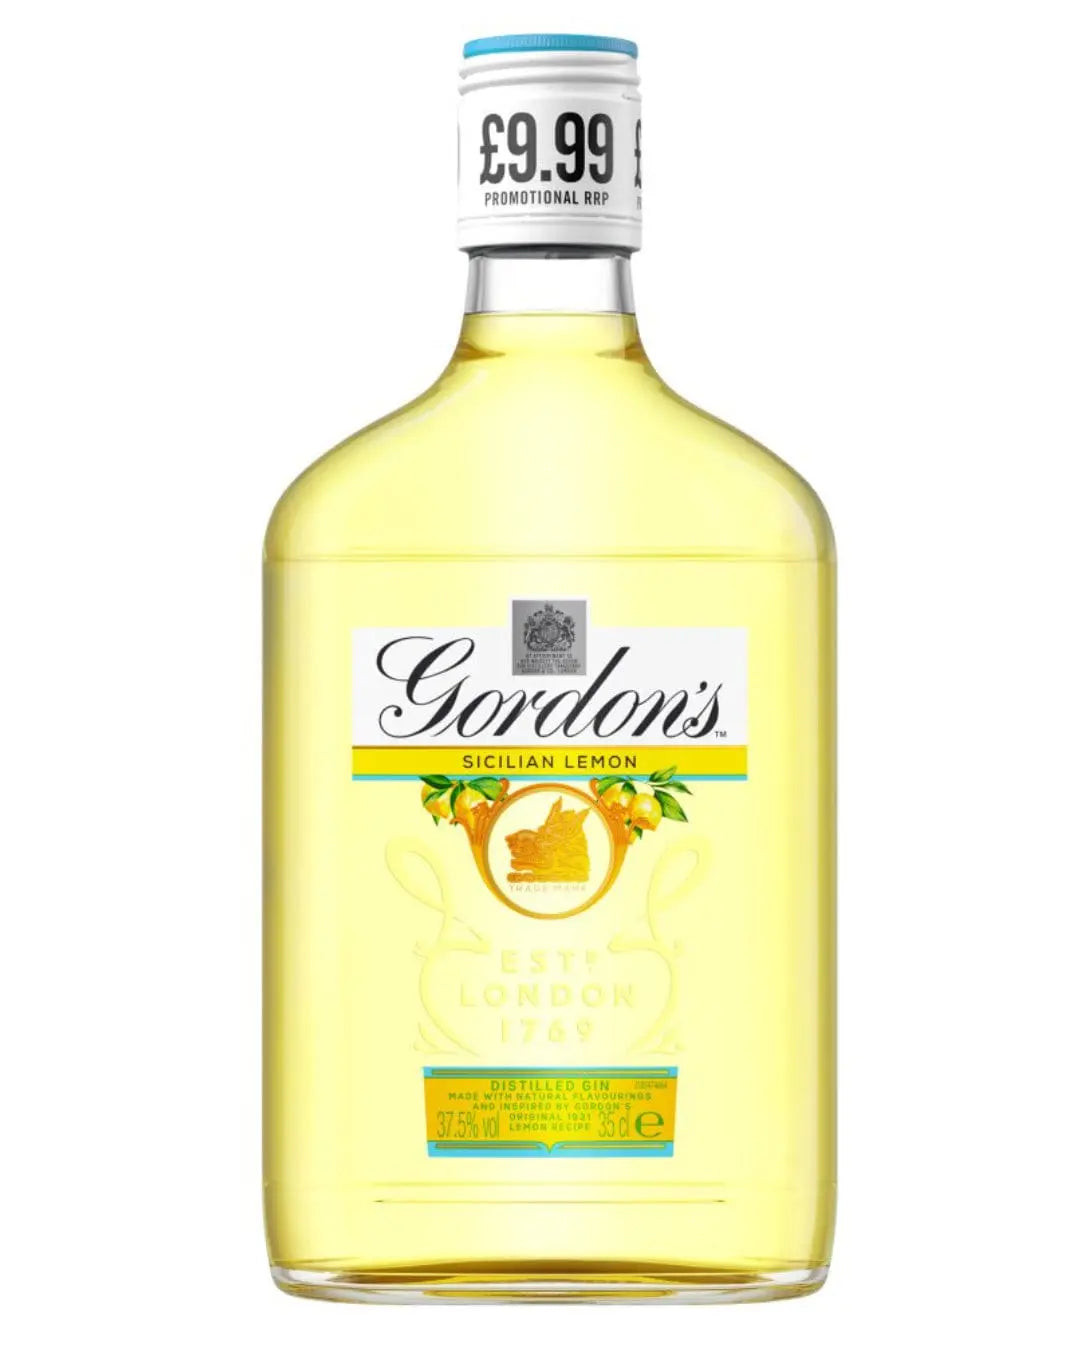 Gordon's Sicilian Lemon Gin, 35 cl Gin